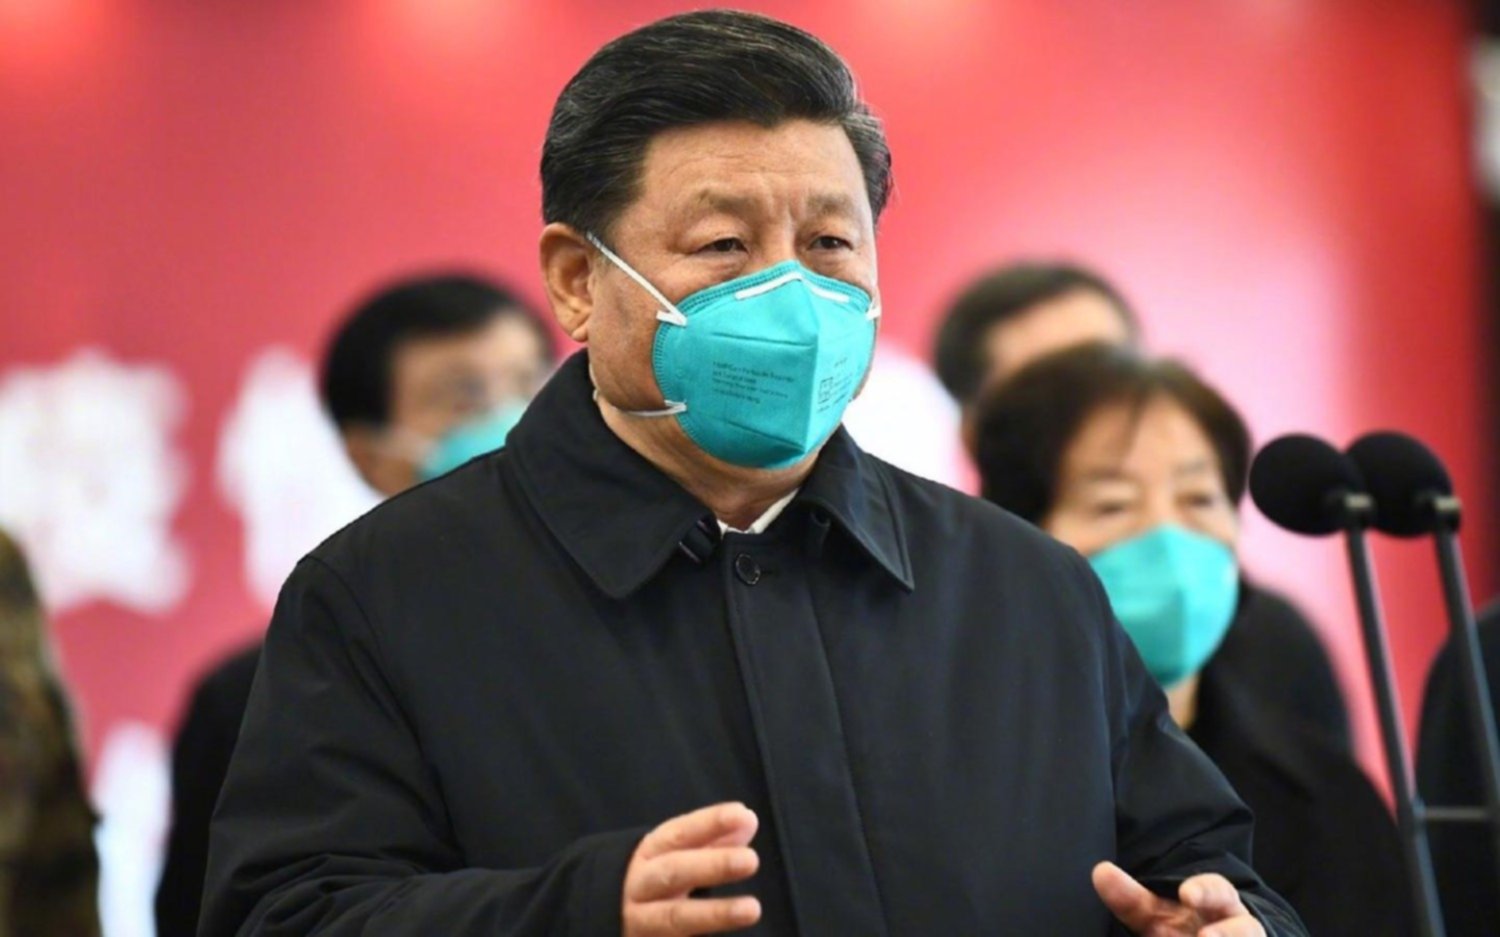 Le dijo "payaso" al líder chino Xi Jinping y ahora no lo encuentran por ningún lado